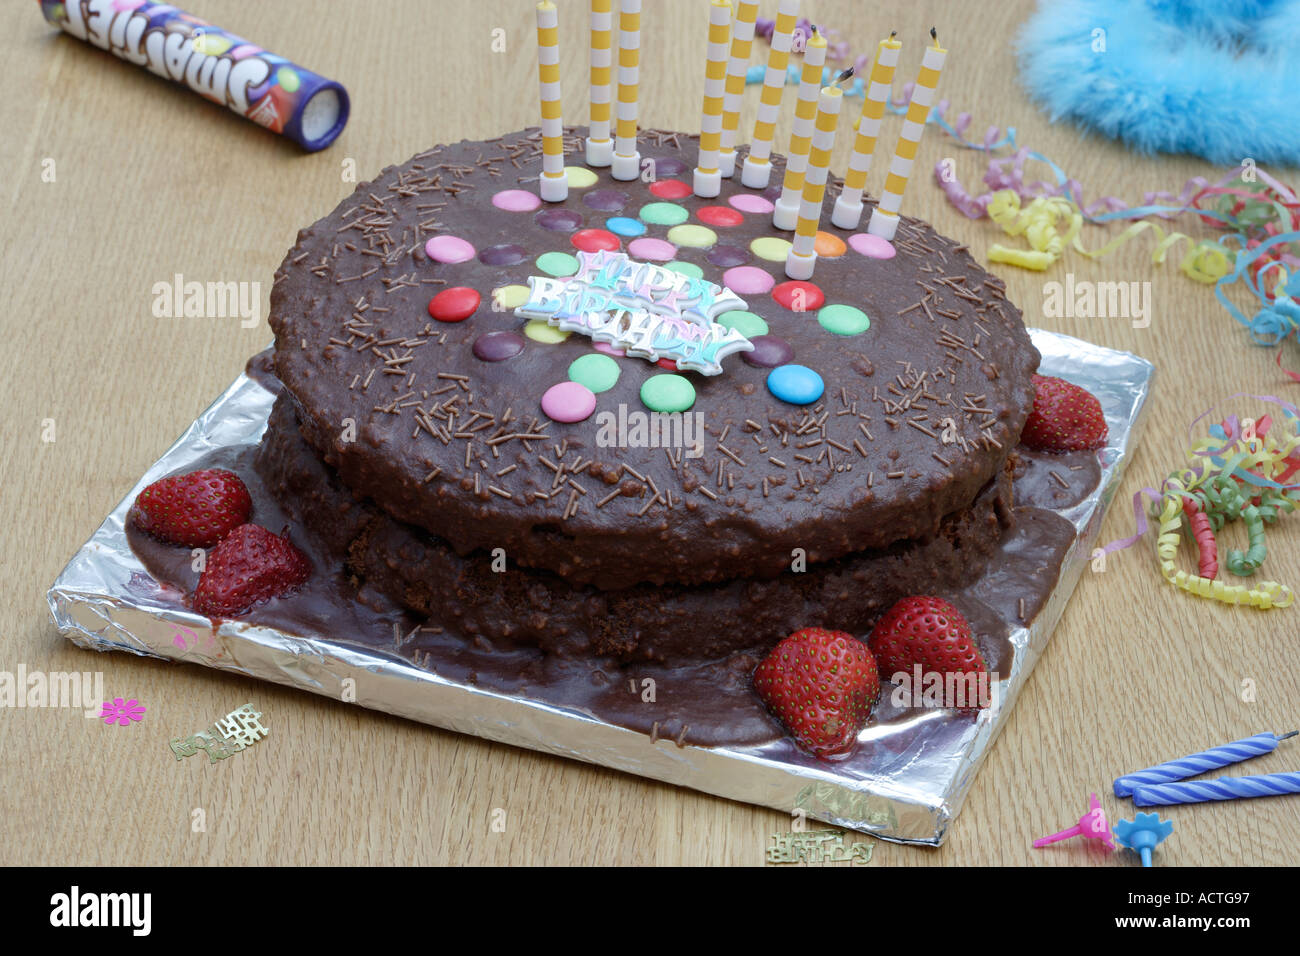 Torta al cioccolato con zucchero colorato dischi sgusciate e candele Foto Stock